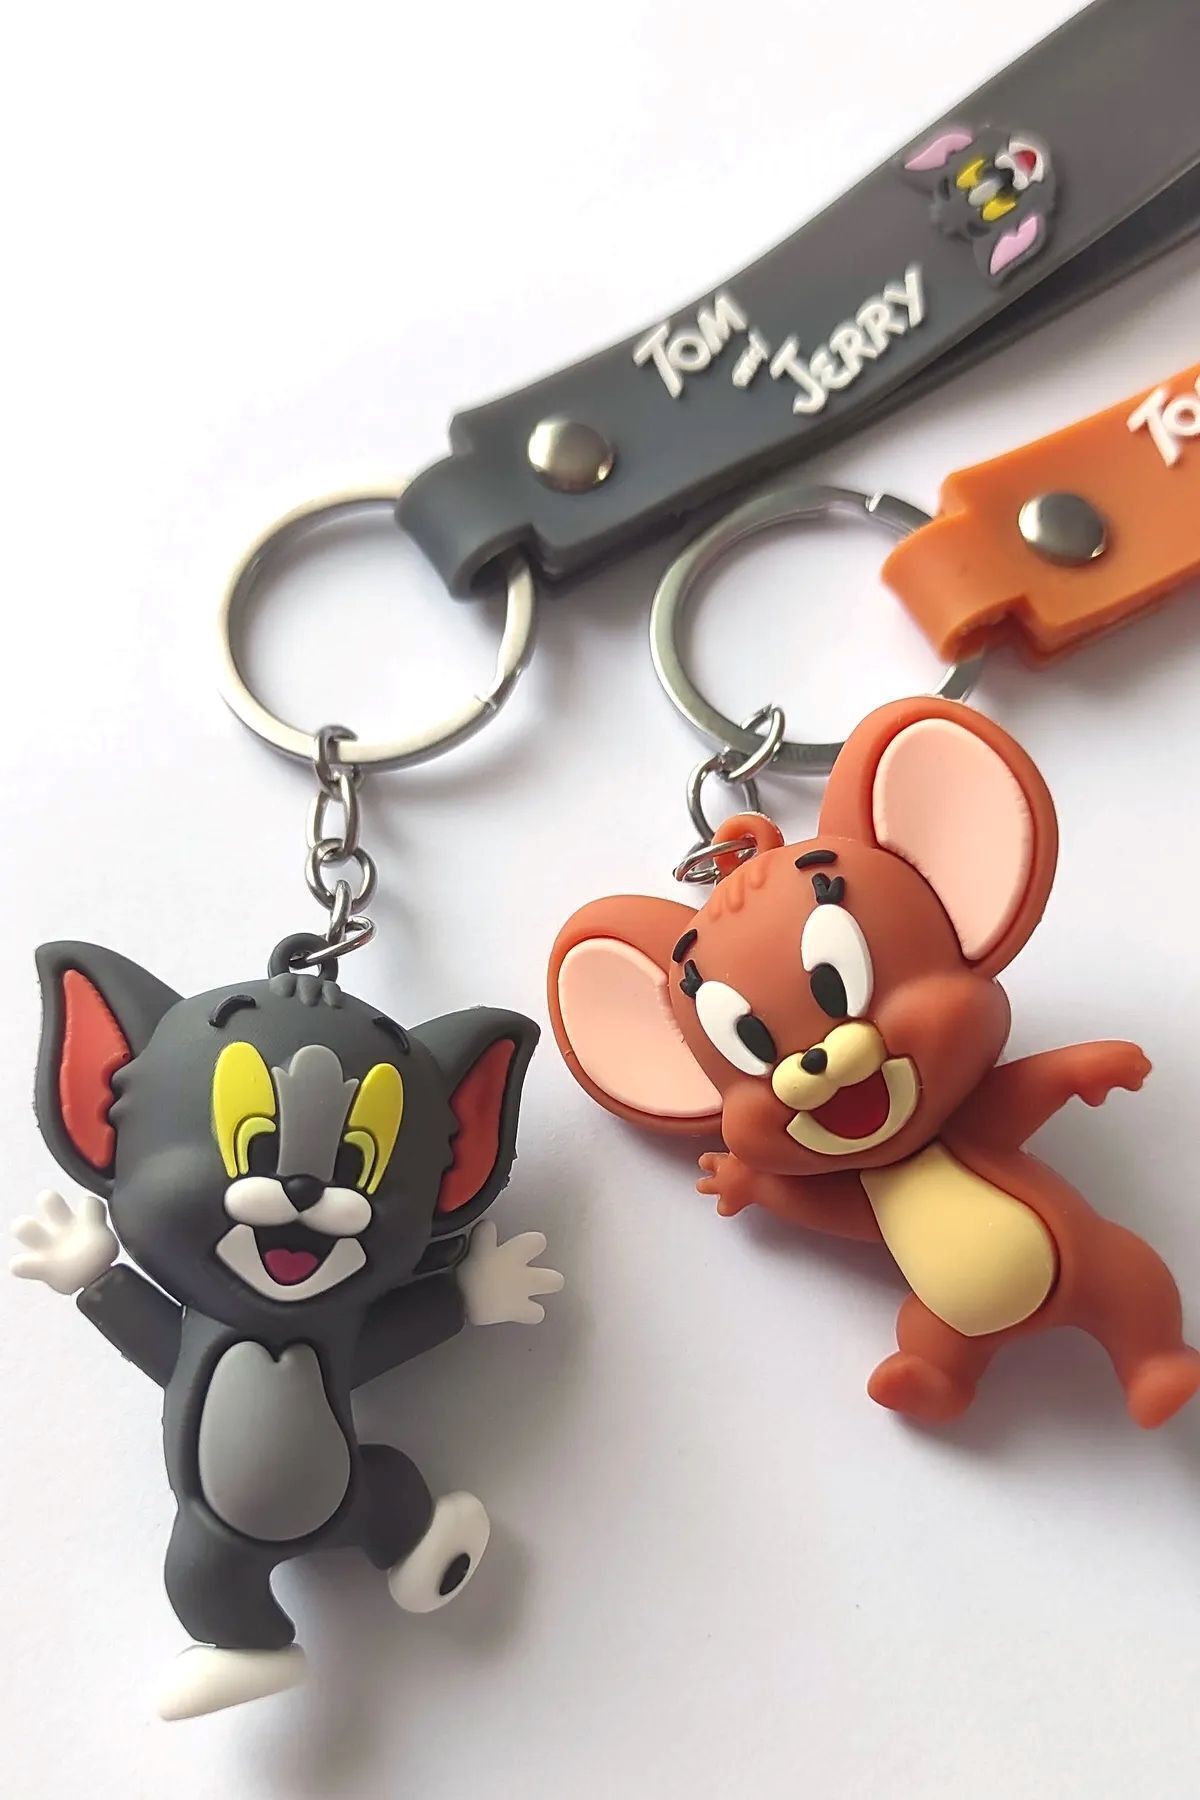 GLANZEND Tom Ve Jerry 3D Çift Anahtarlık 2 Adet